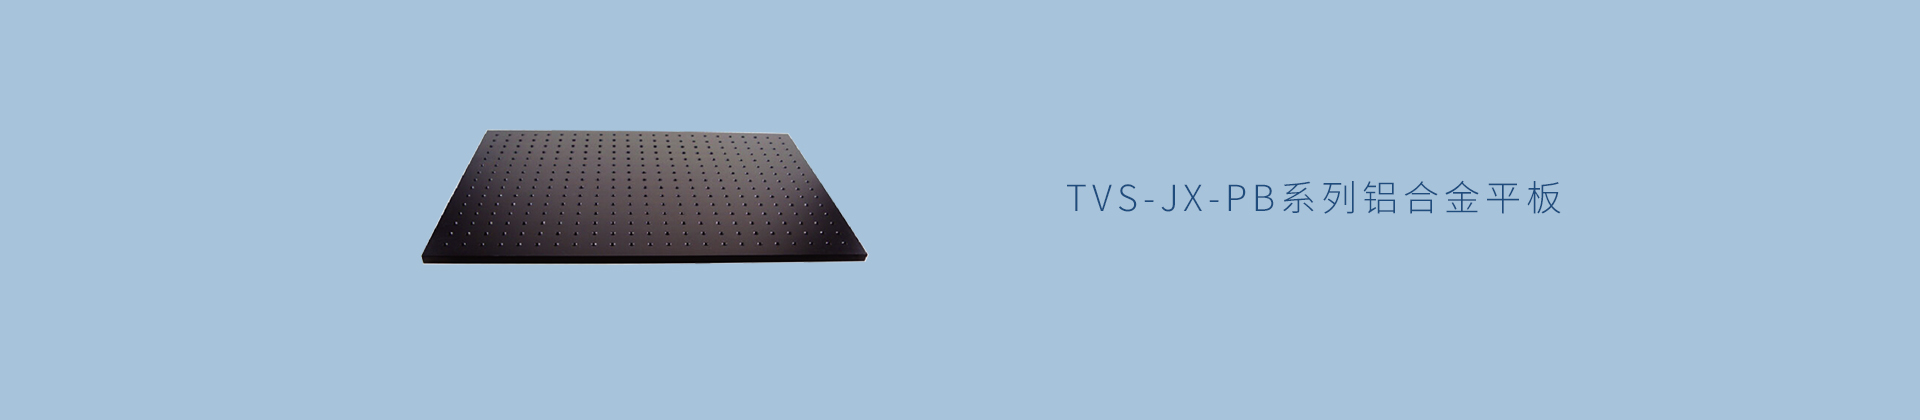 TVS-JX-PB系列铝合金平板